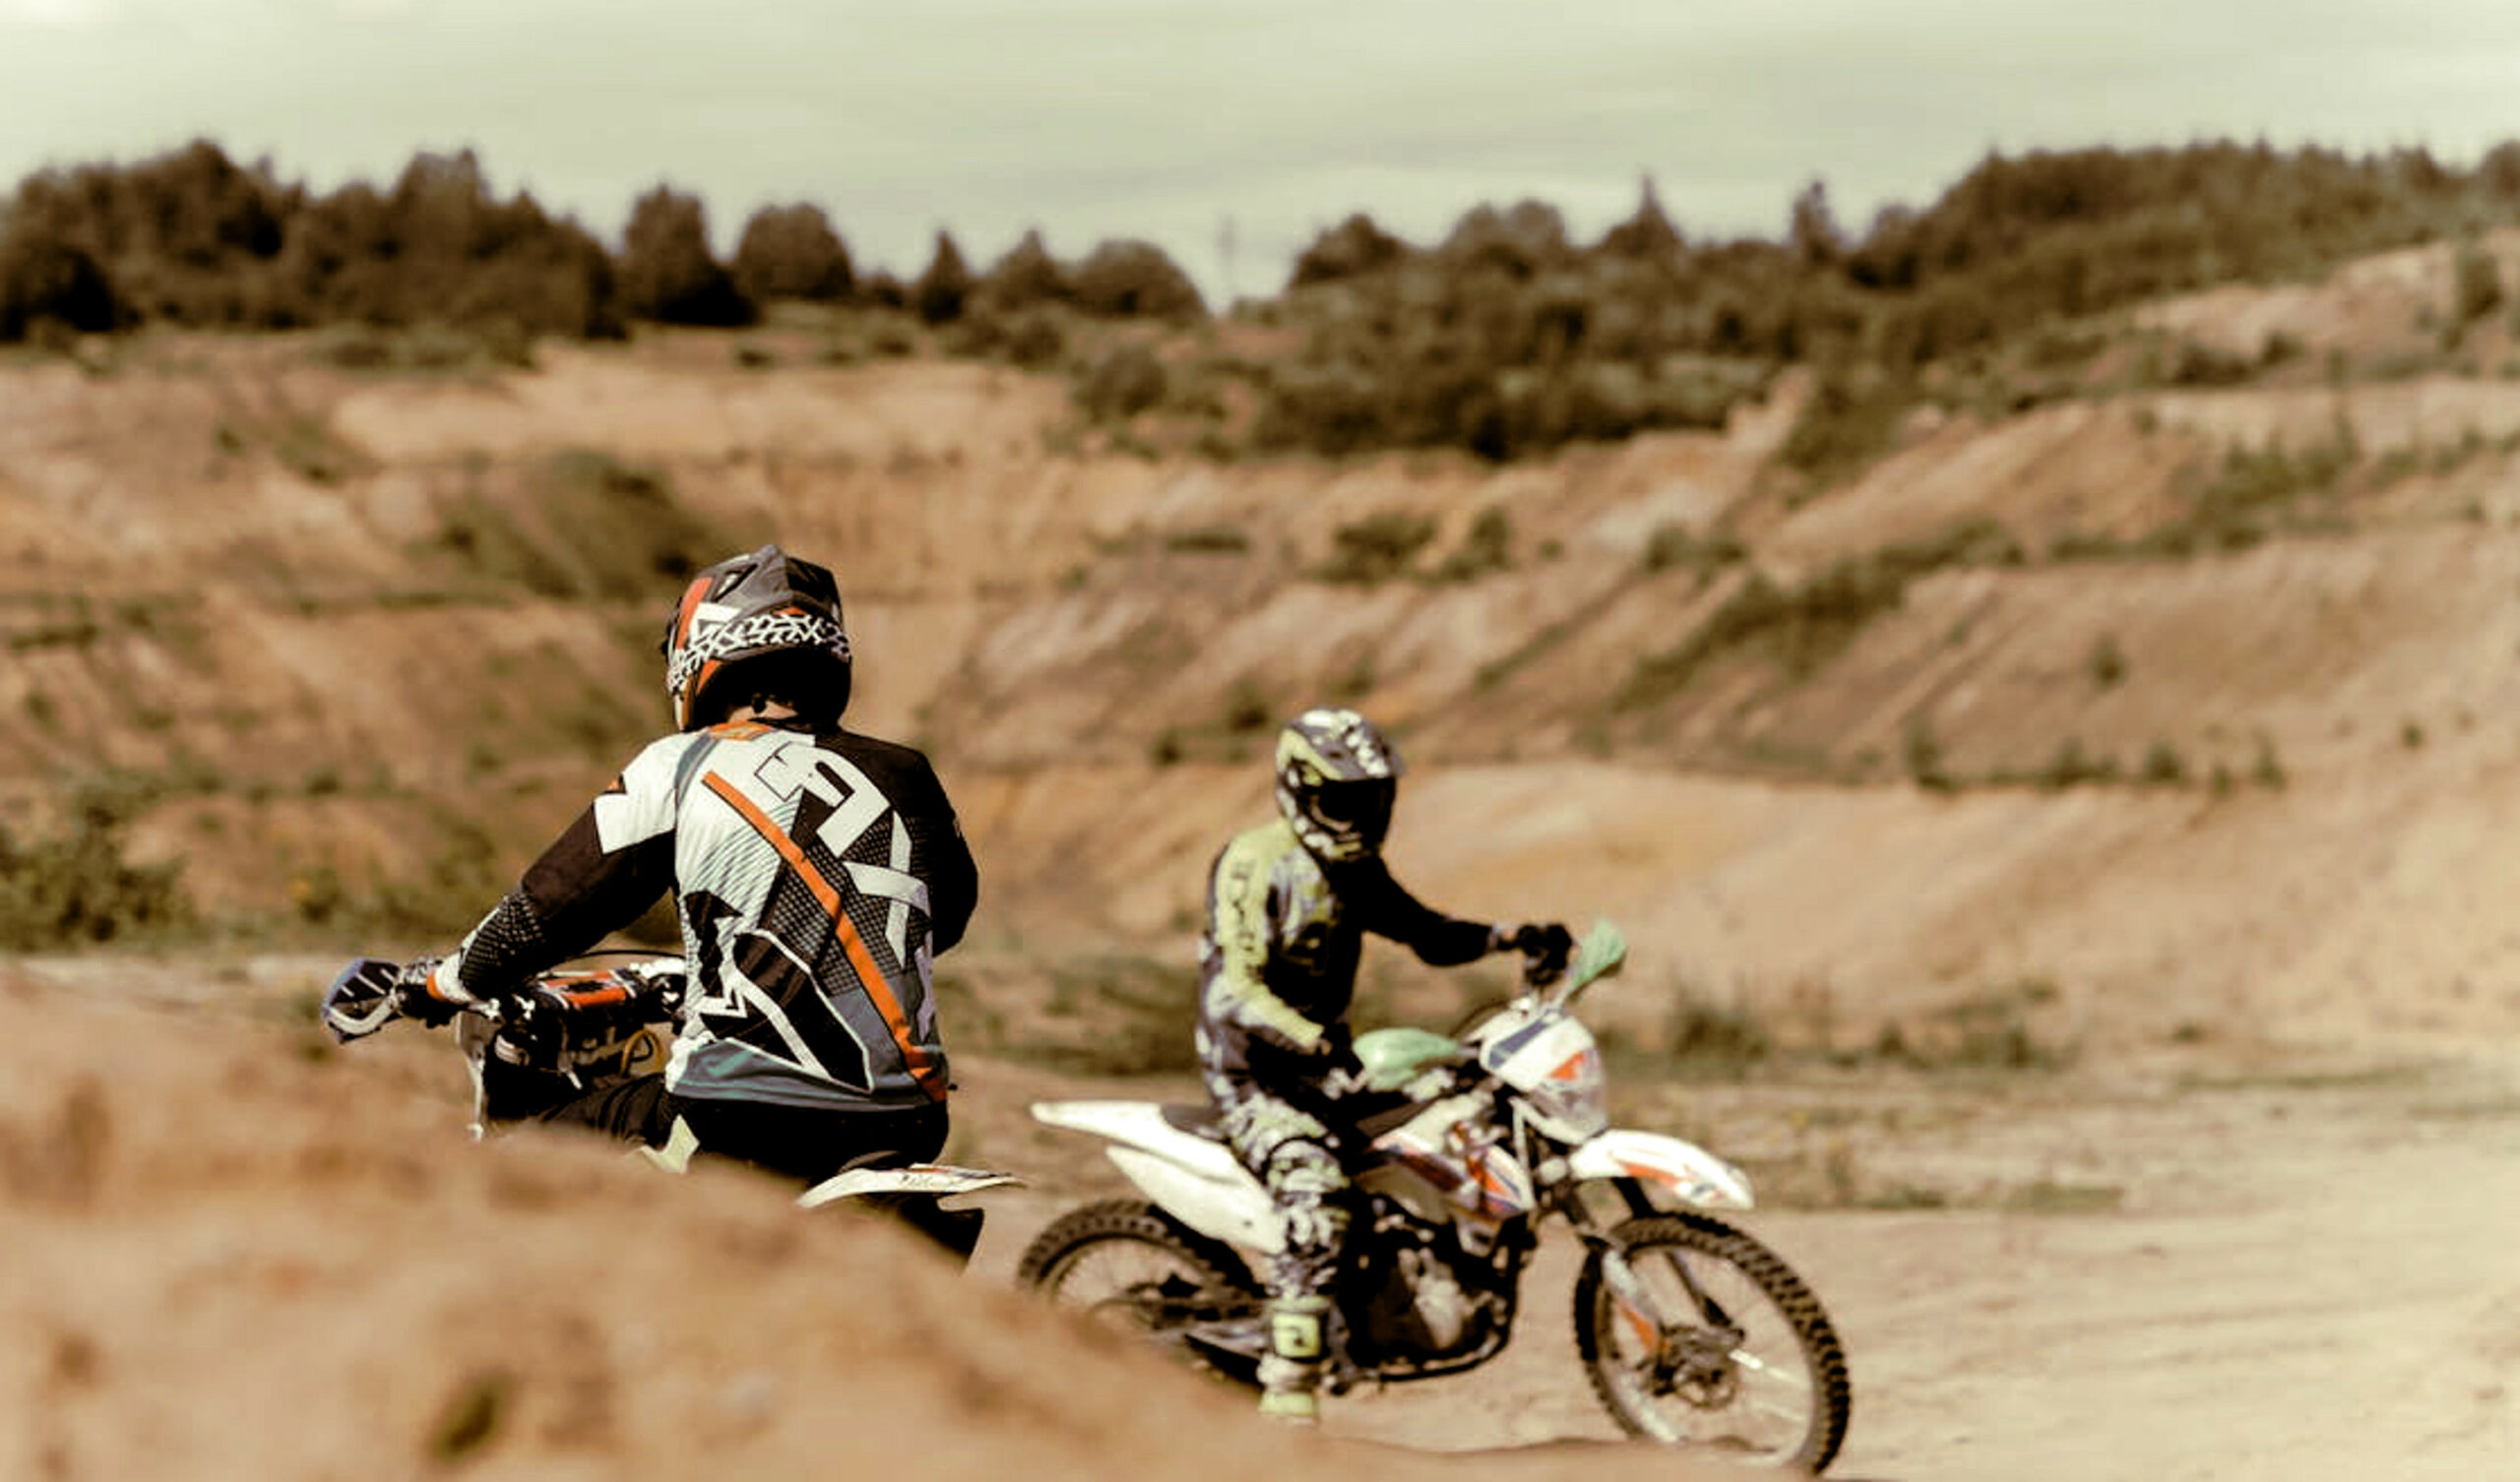 Dirt motocikli koji se utrkuju u pustinji